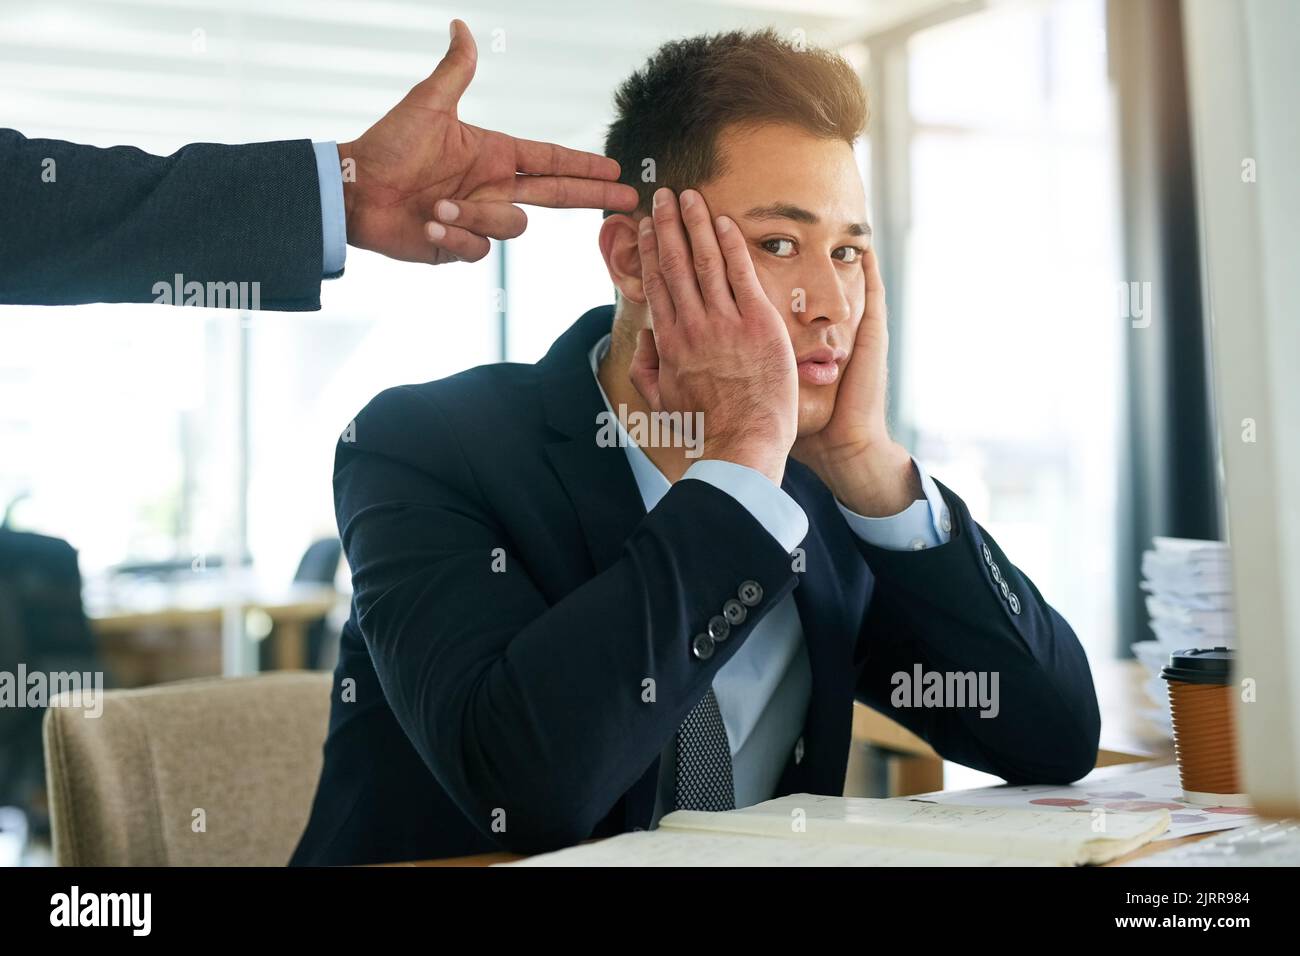 Si prova a lavorare in questo modo. Ritratto di un uomo d'affari che lavora mentre il suo capo si aggrae con una pistola alla testa. Foto Stock